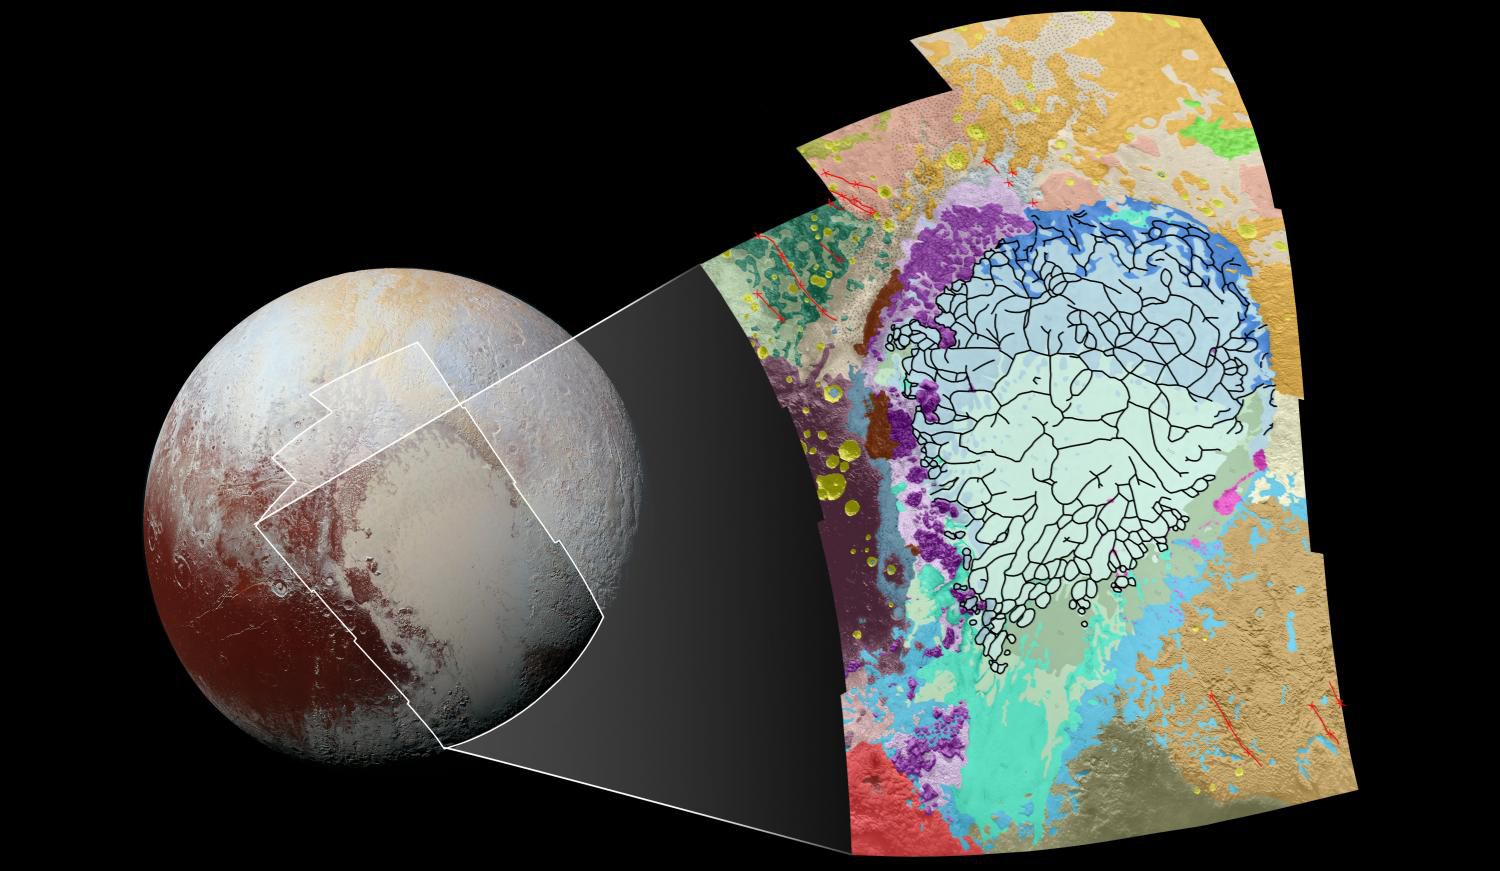 Геология Плутона нанесена на карту